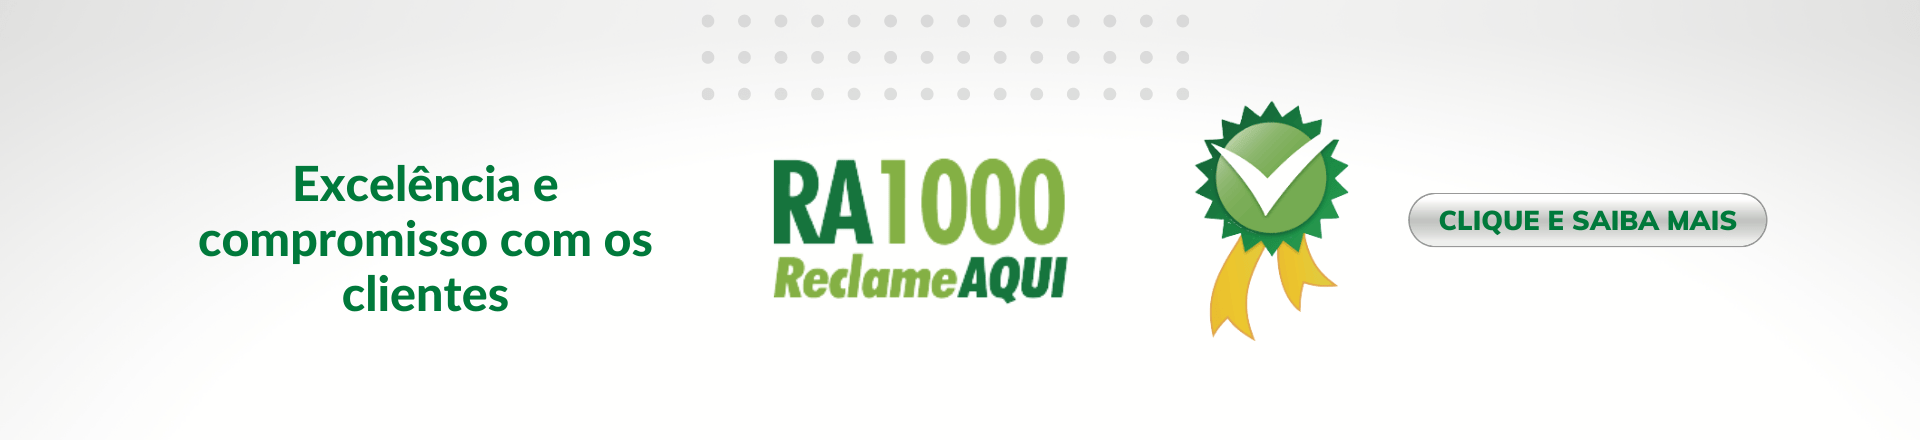 RA1000